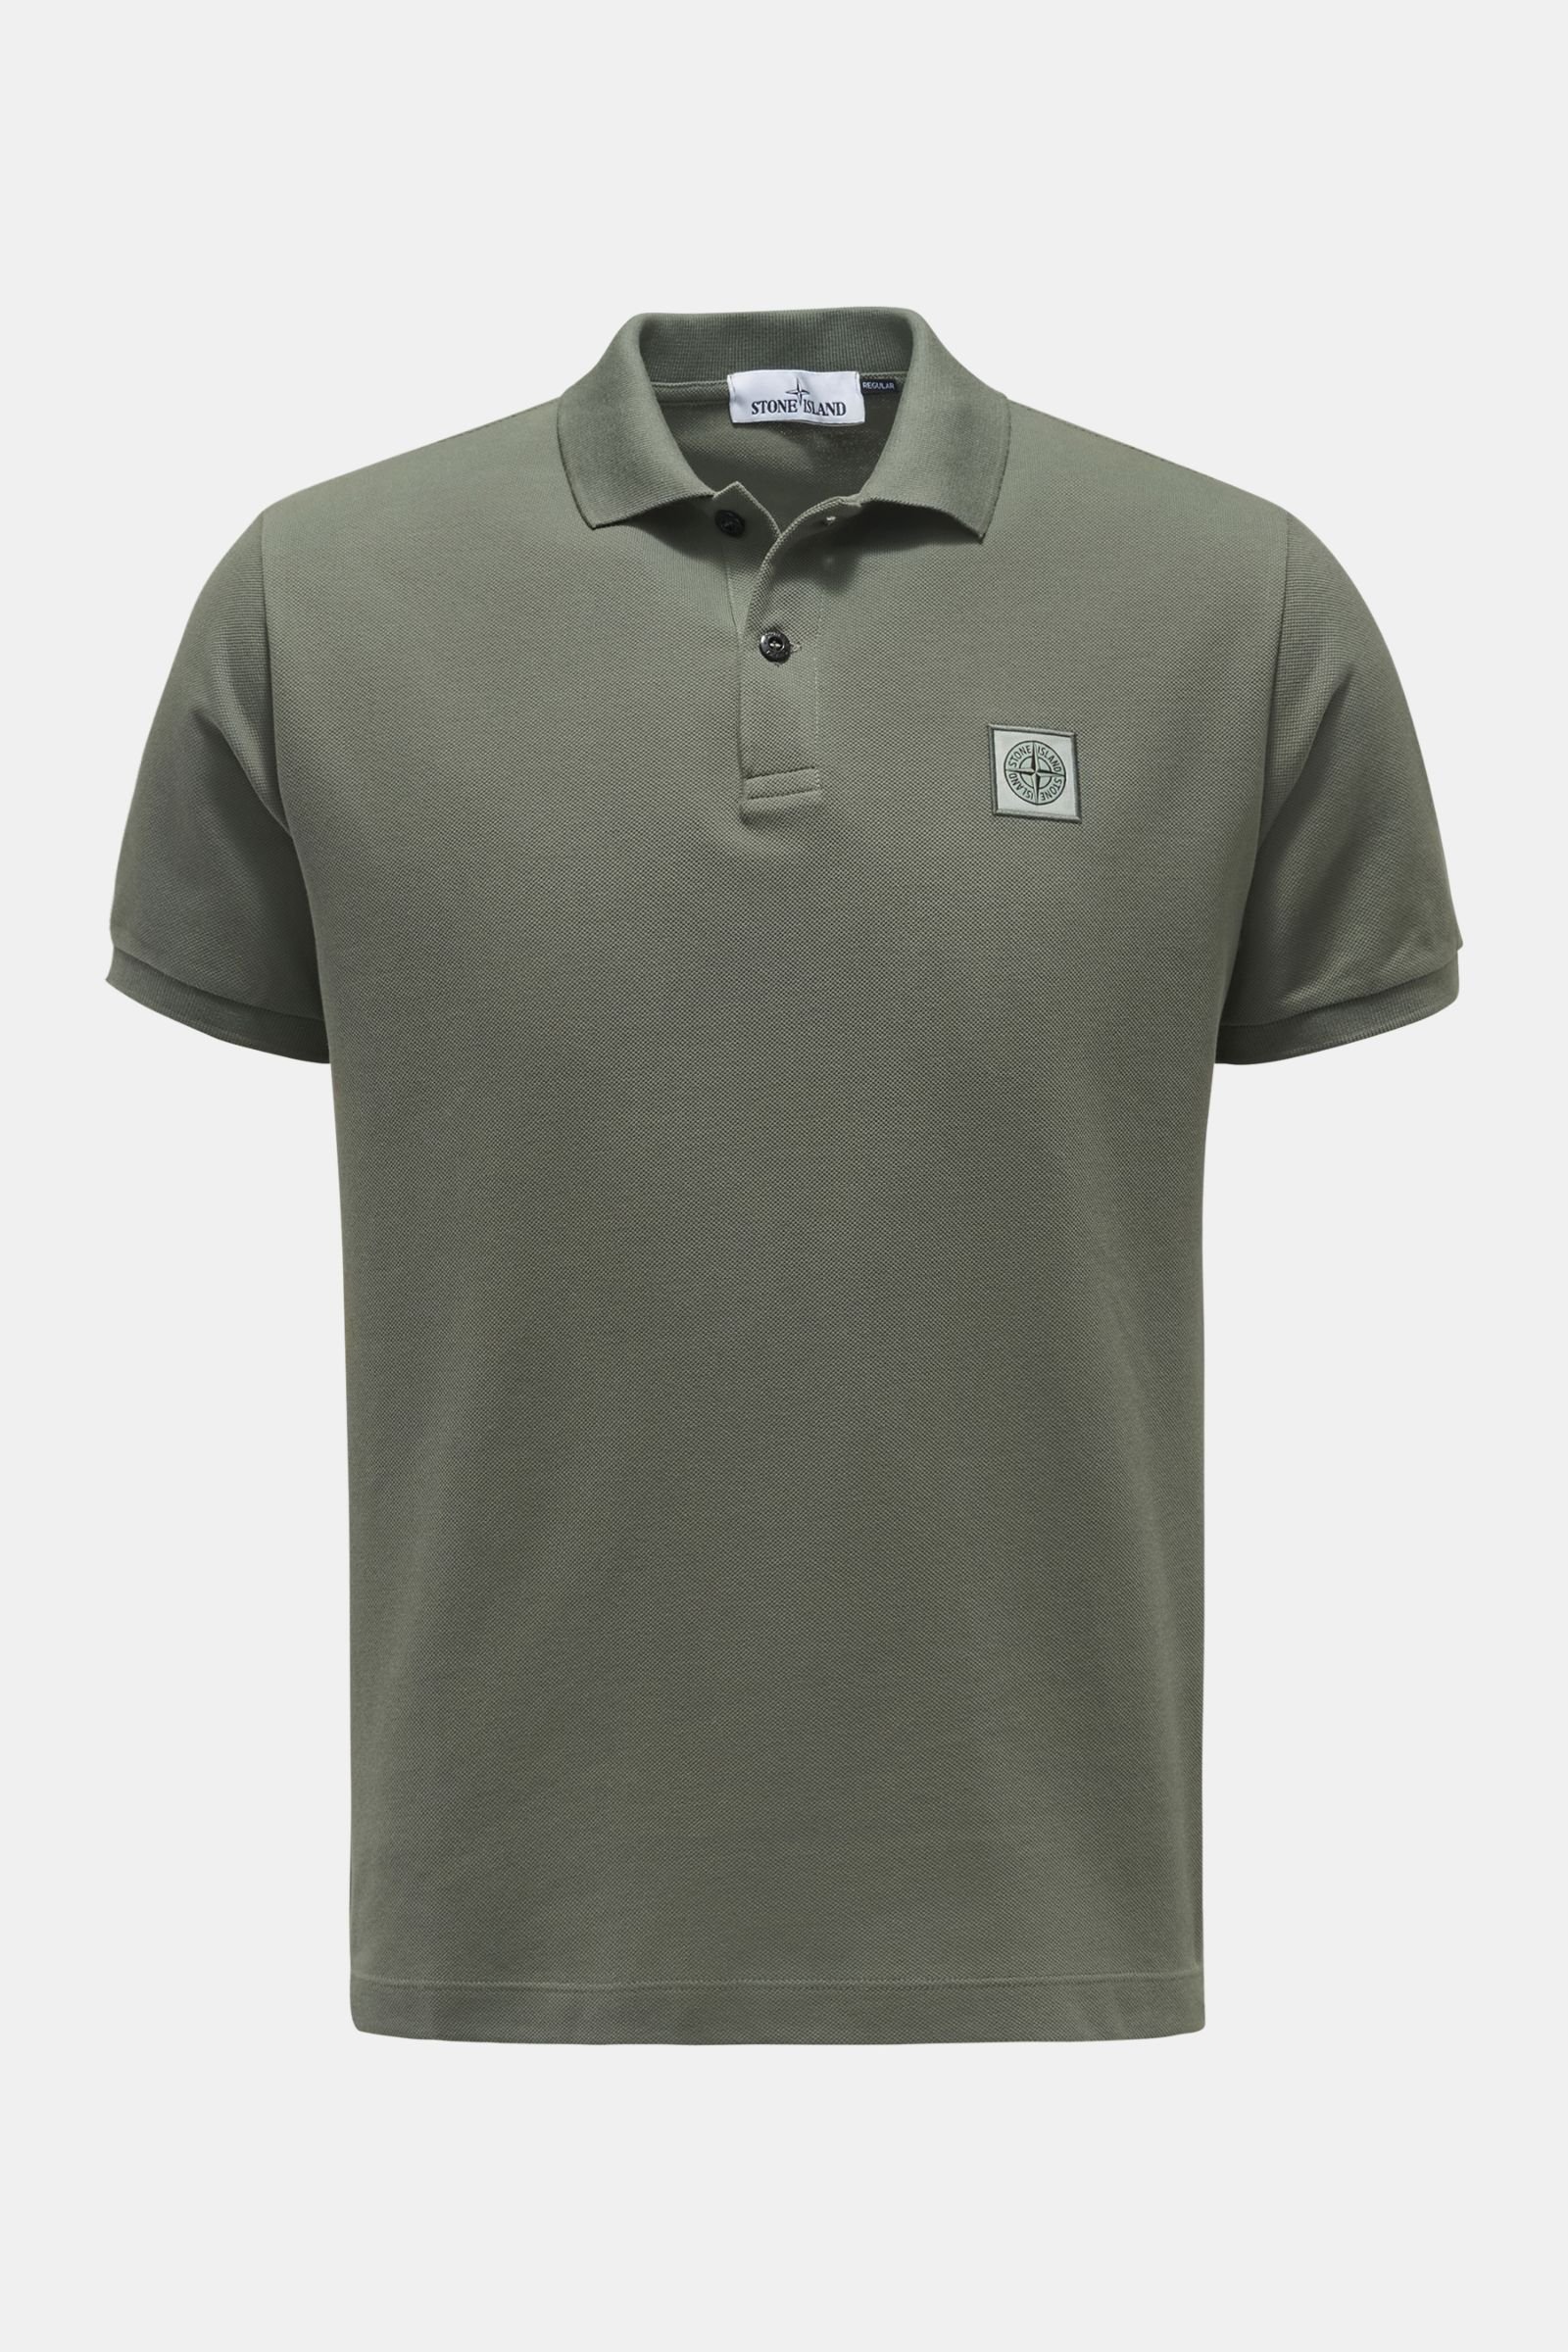 Polo shirt grey-green